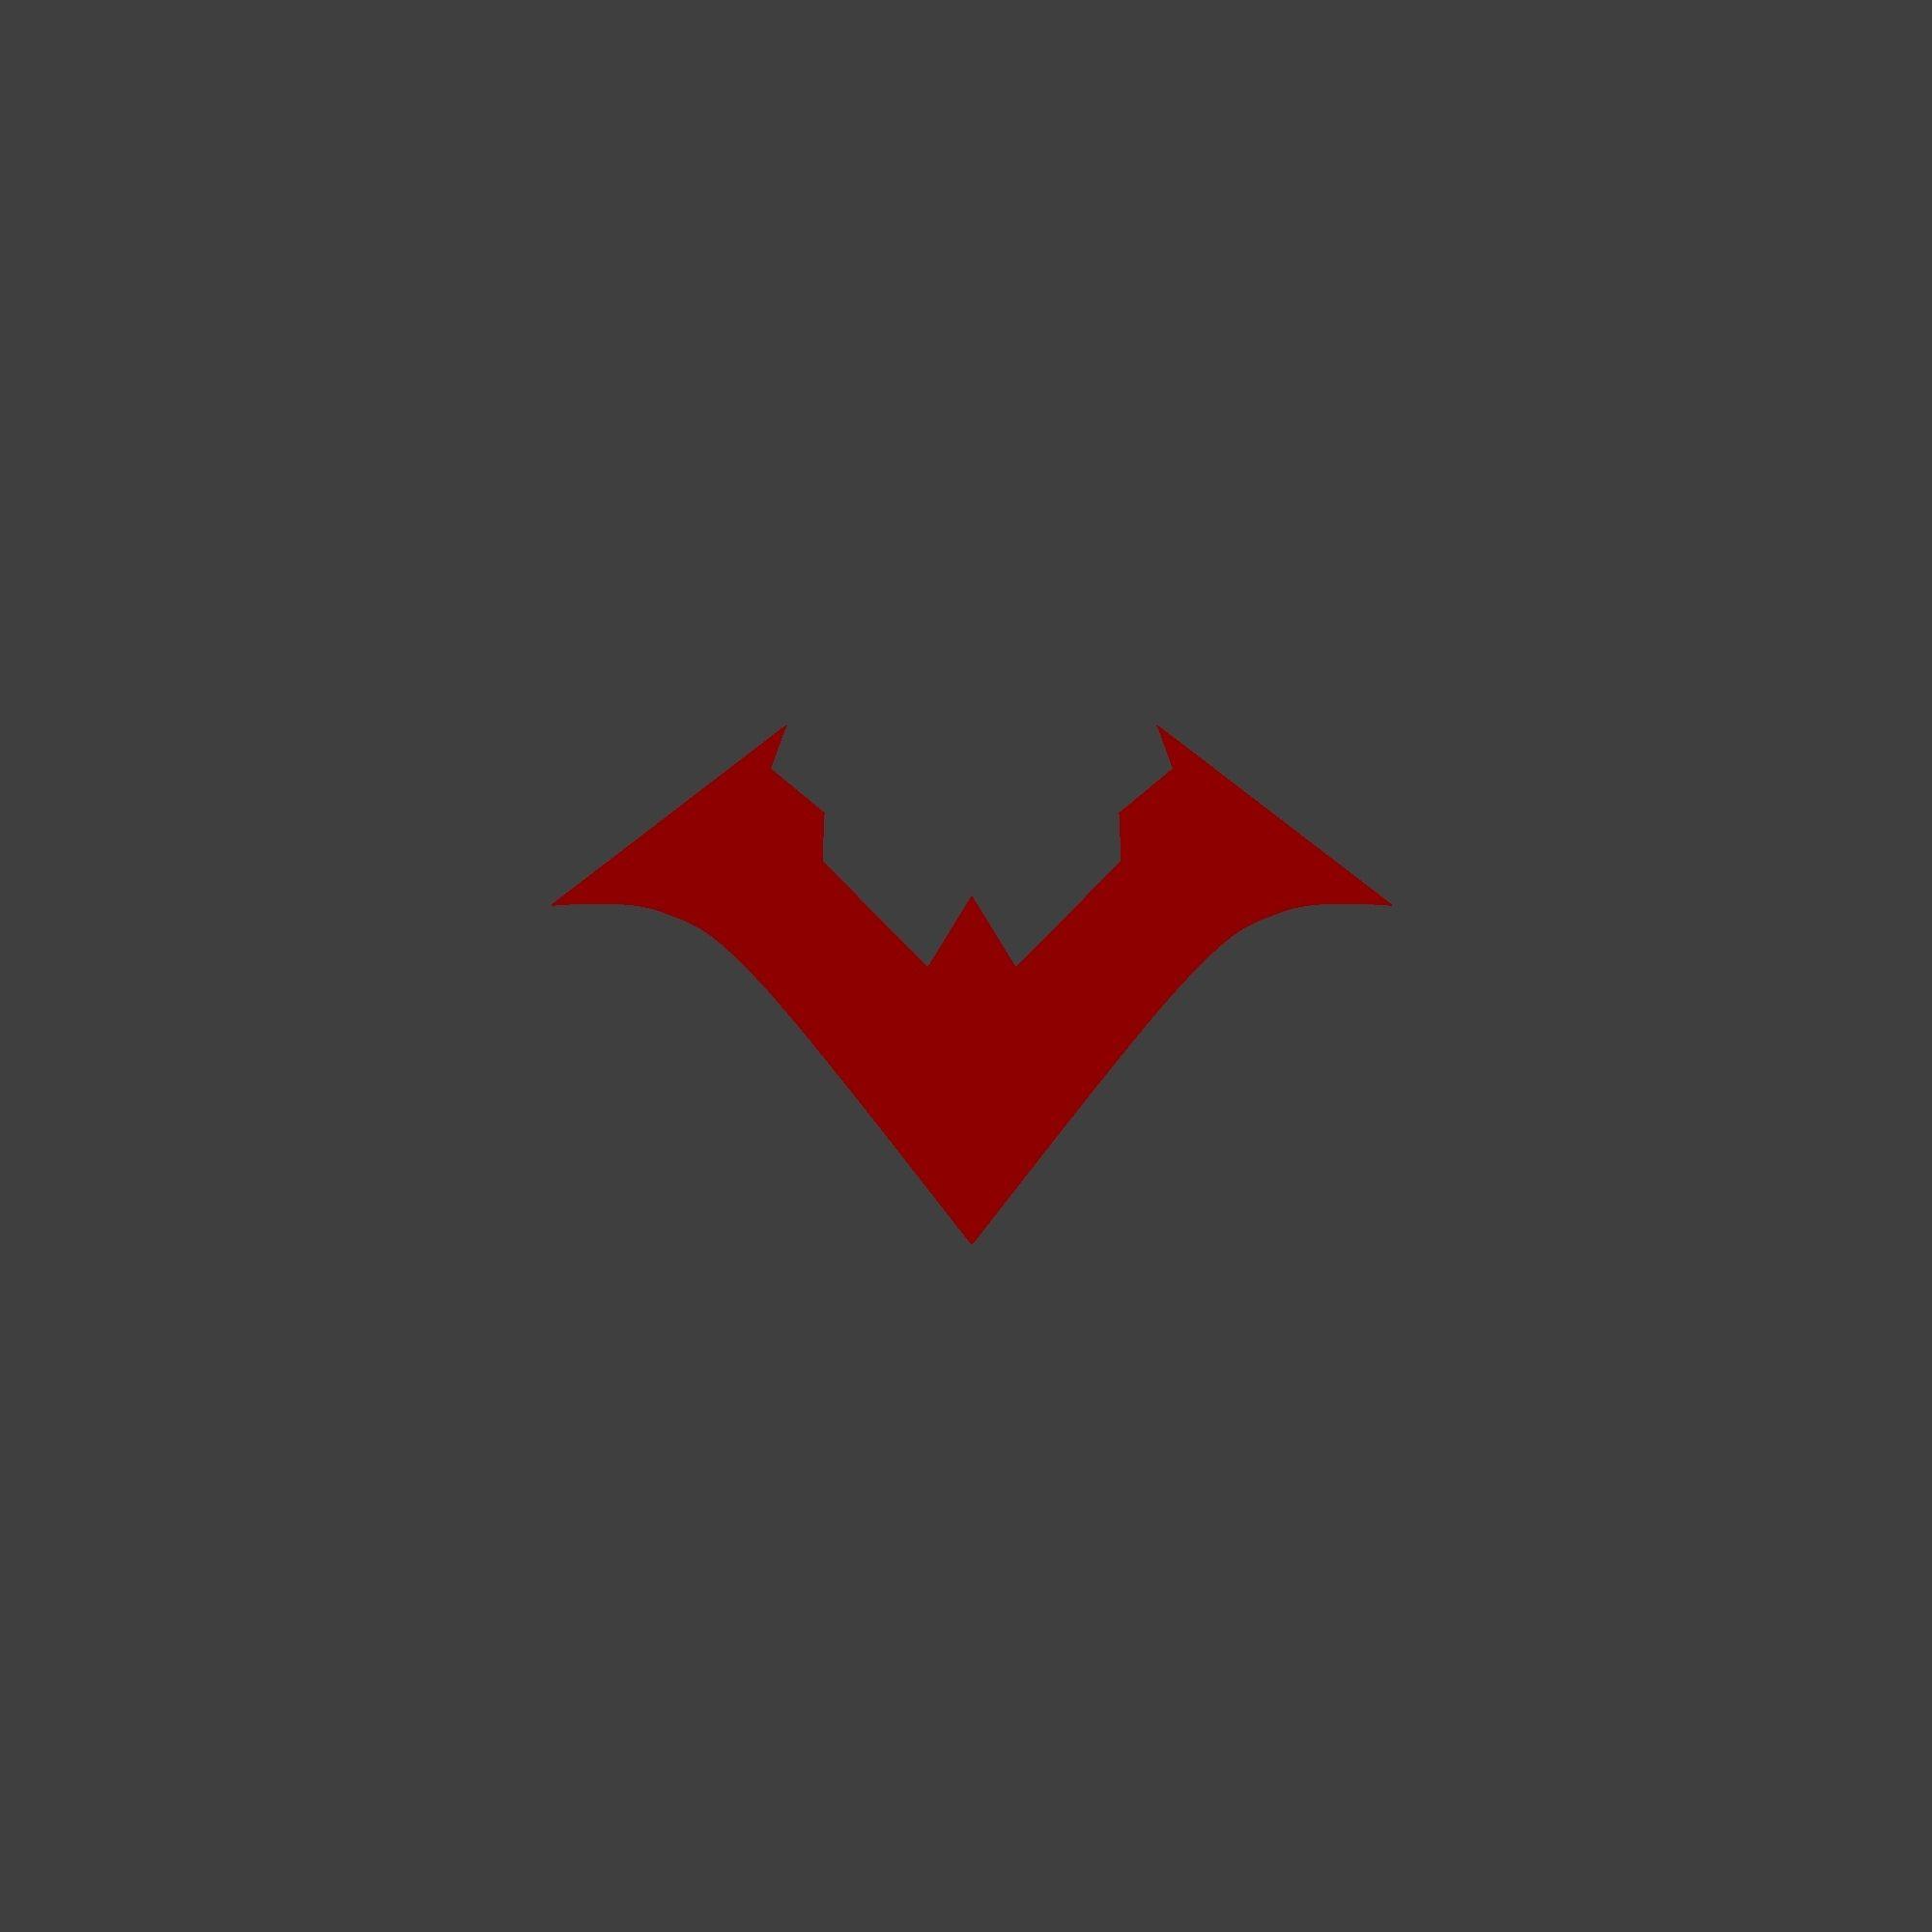 Red Nightwing Logo - Nu 52 Nightwing logo wallpaper | Geek | Pinterest | Logos